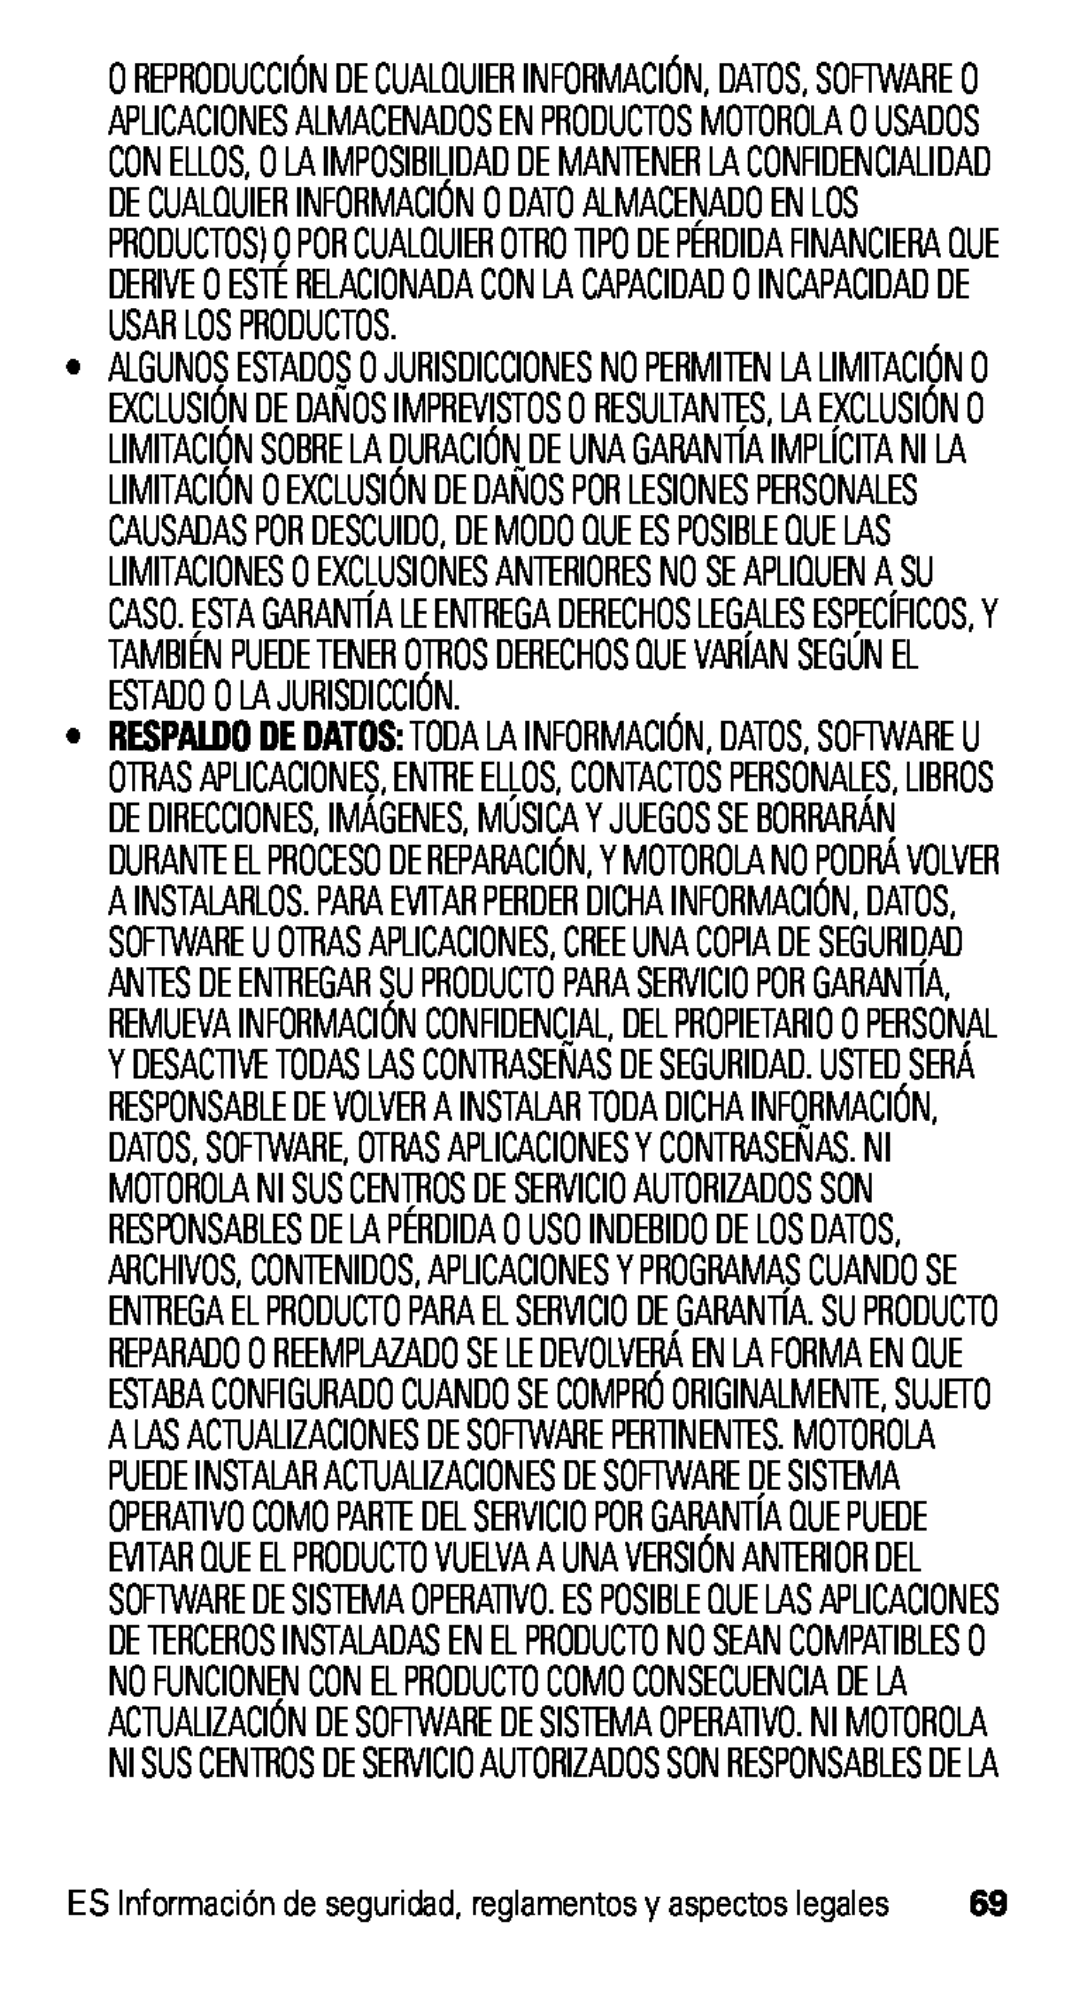 Motorola D1, XT915 manual 